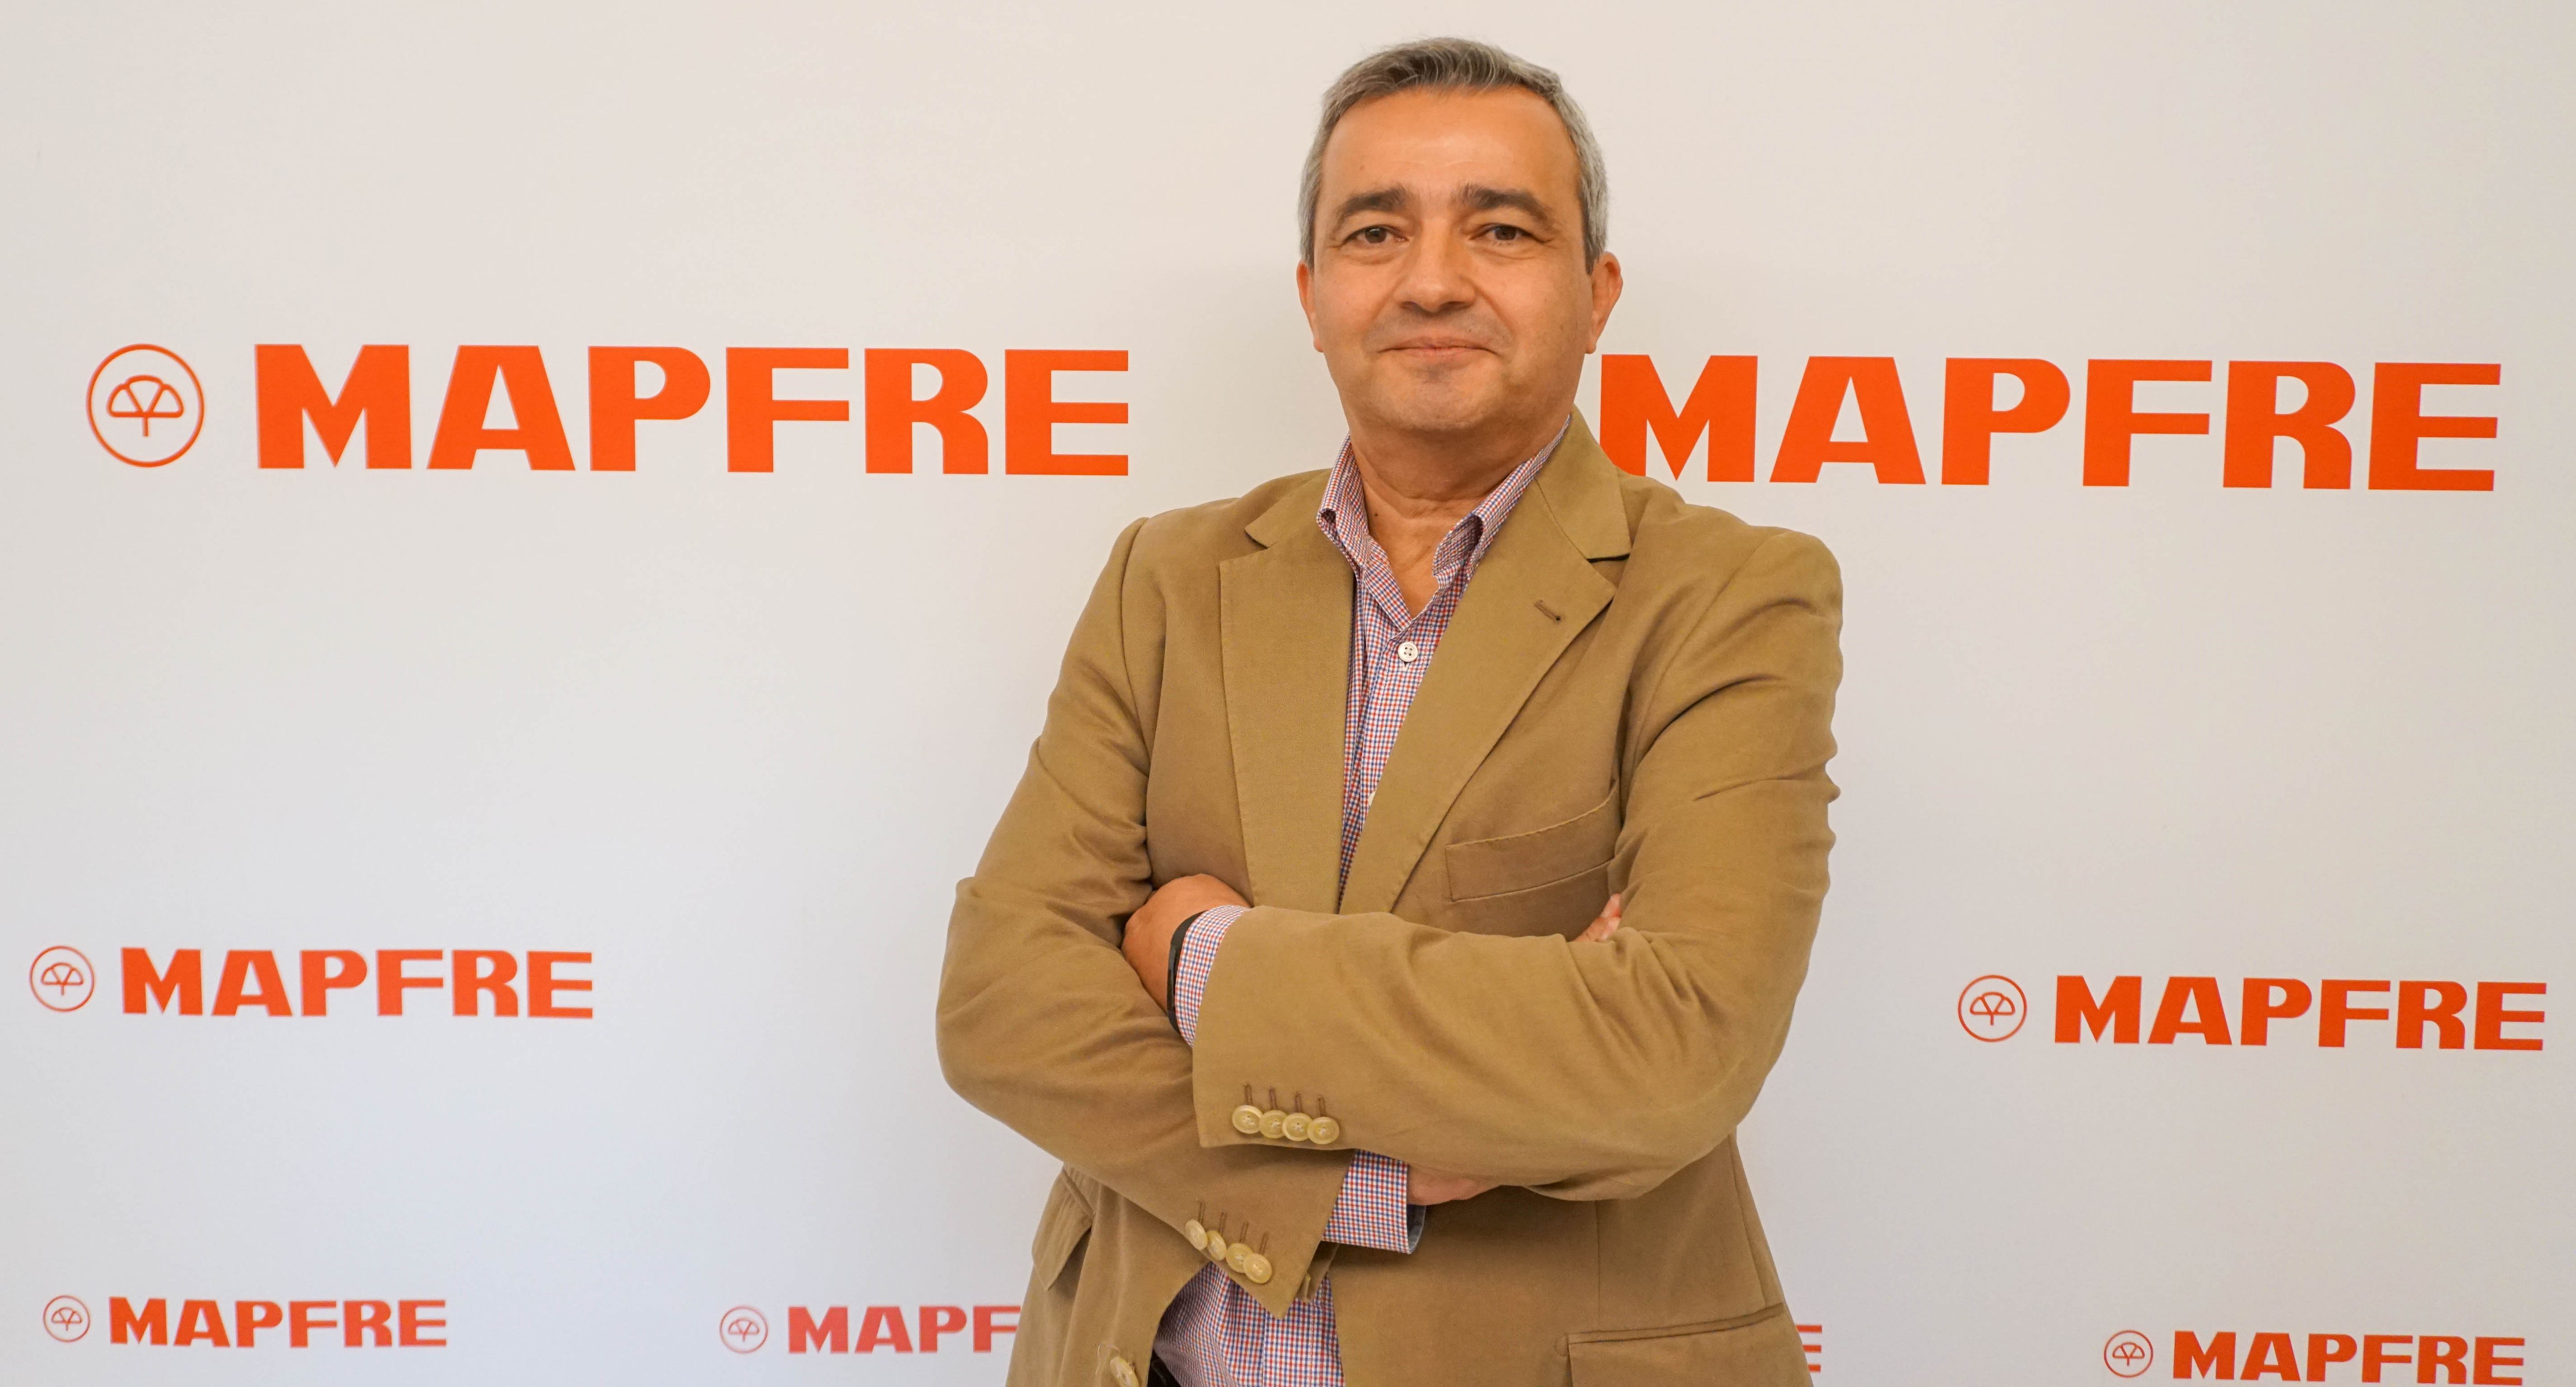 Raúl León (Mapfre): "Ahorrar para la jubilación no es un lujo, es una necesidad"